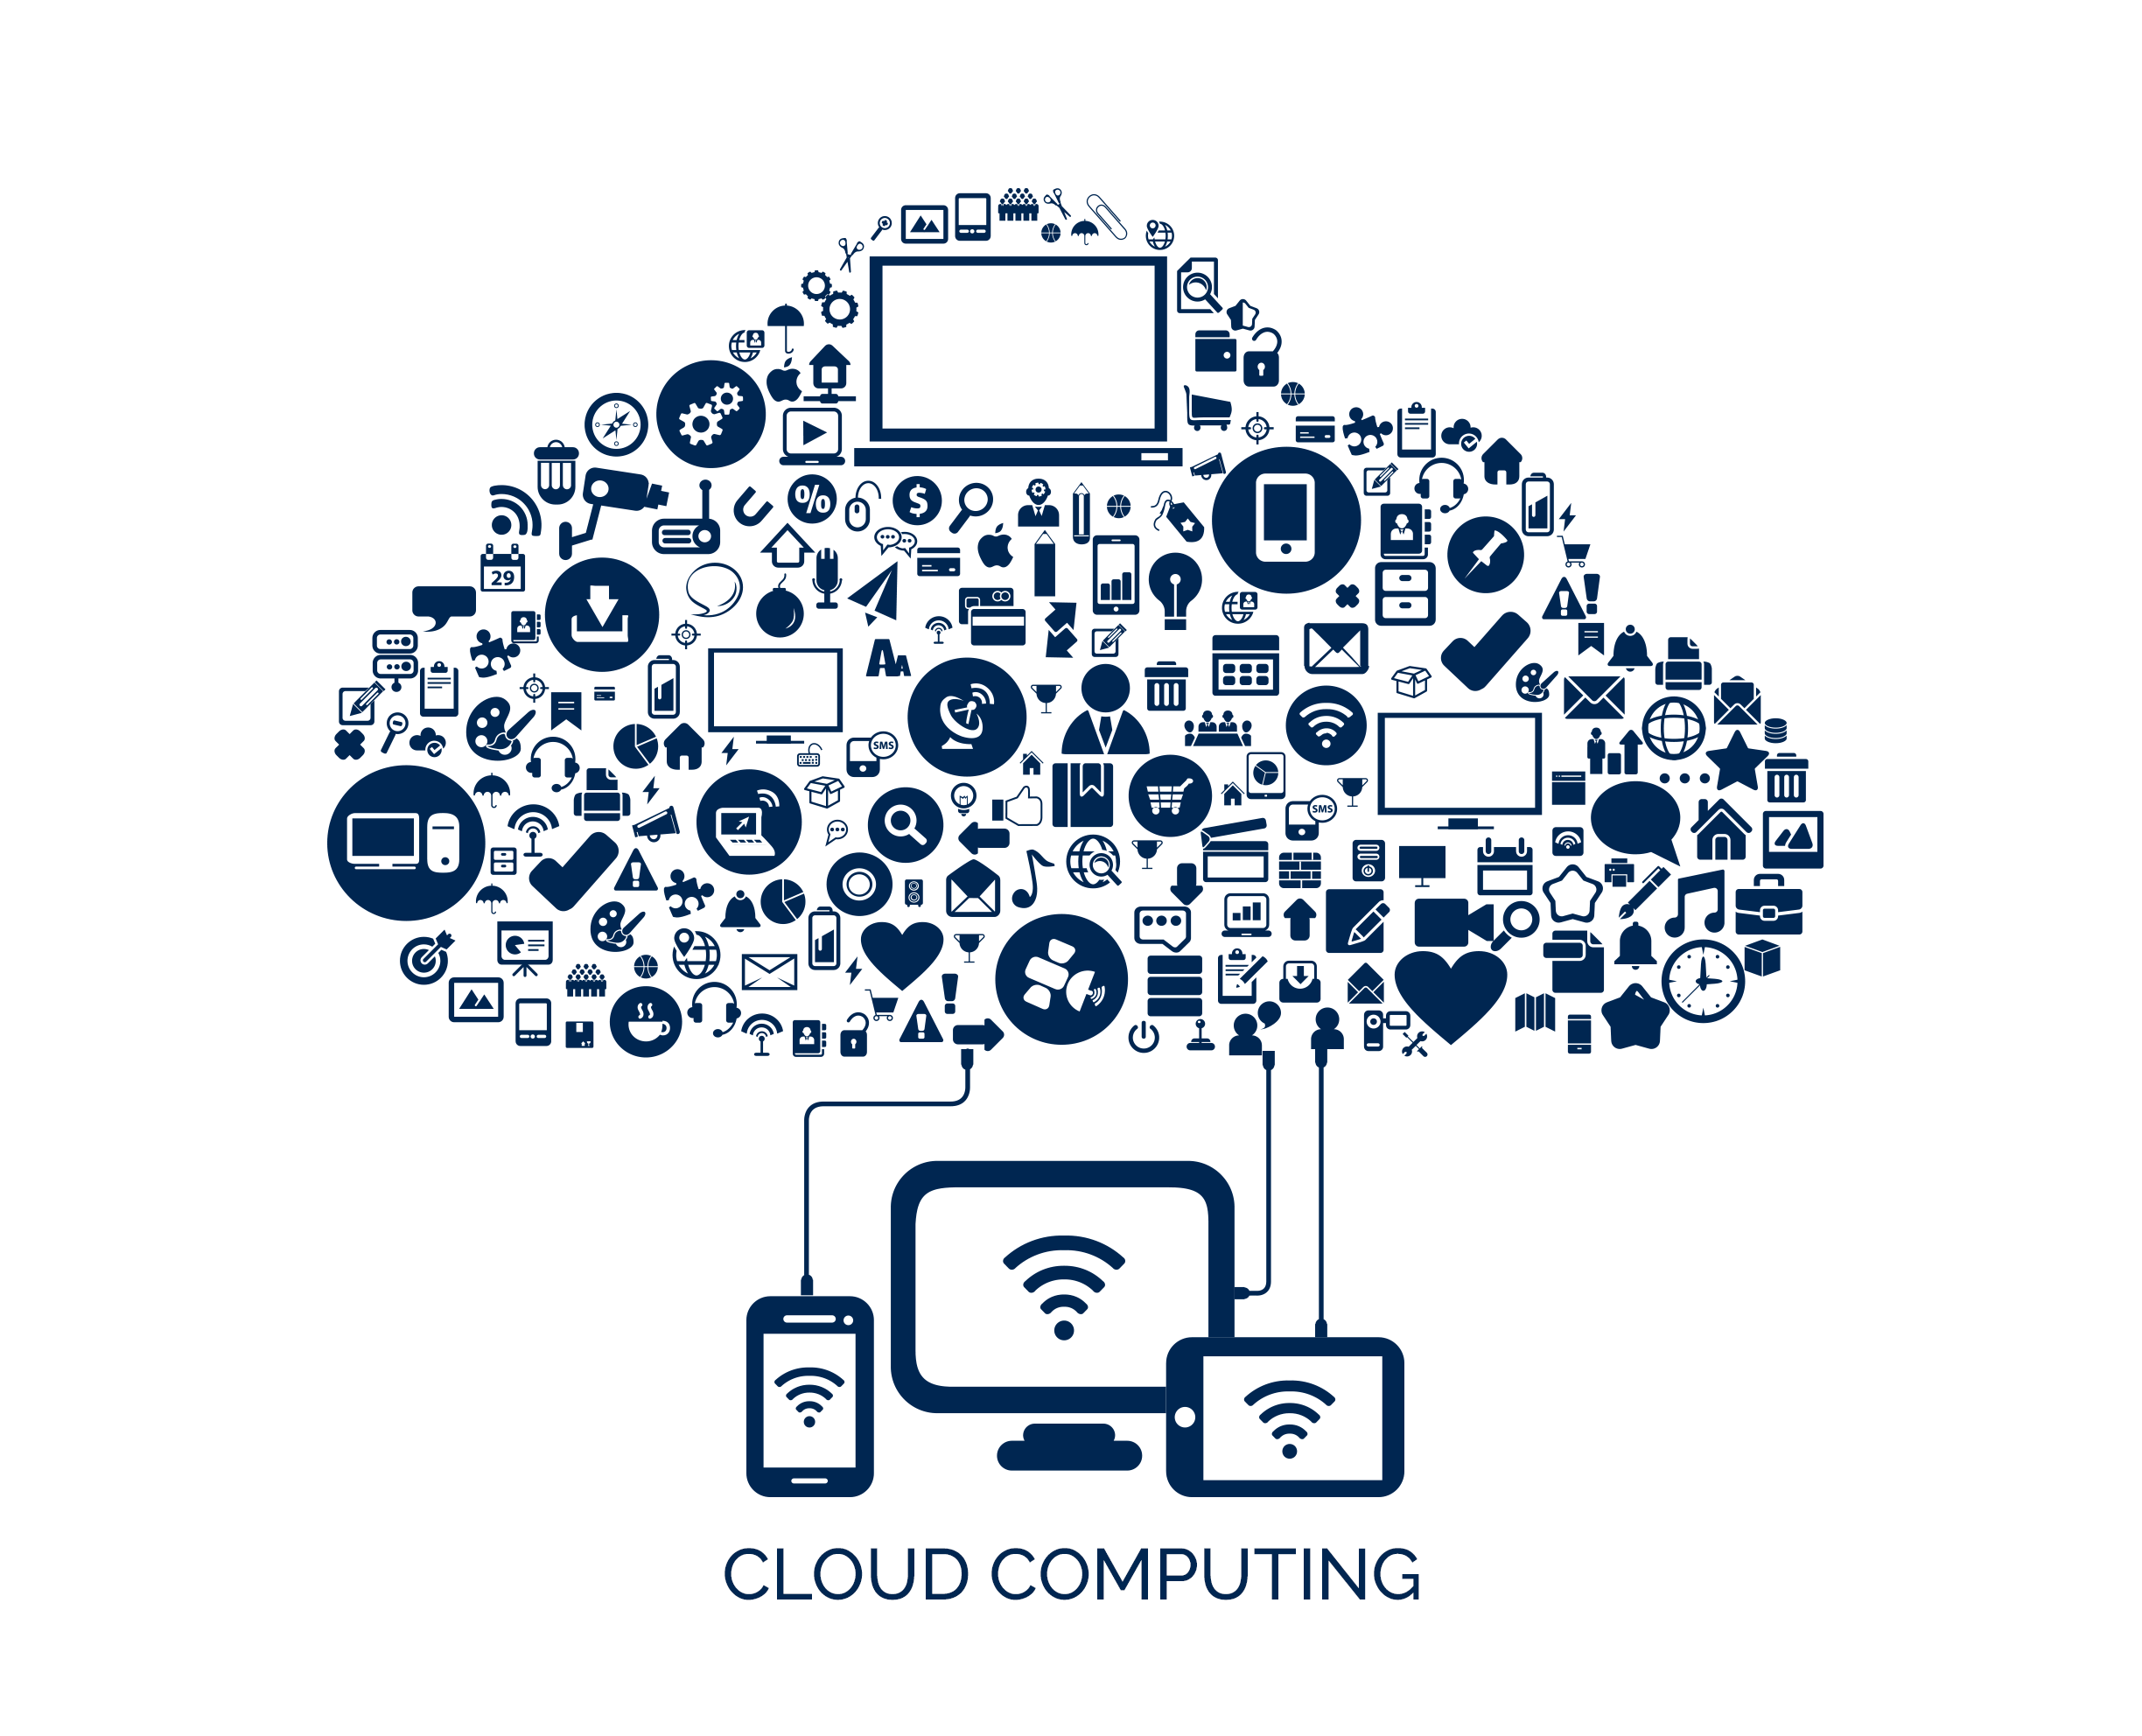 Cloud Computing - Cloud Solutions - Облачные технологии - Облачные вычисления - Облачная инфраструктура - Облачная трансформация